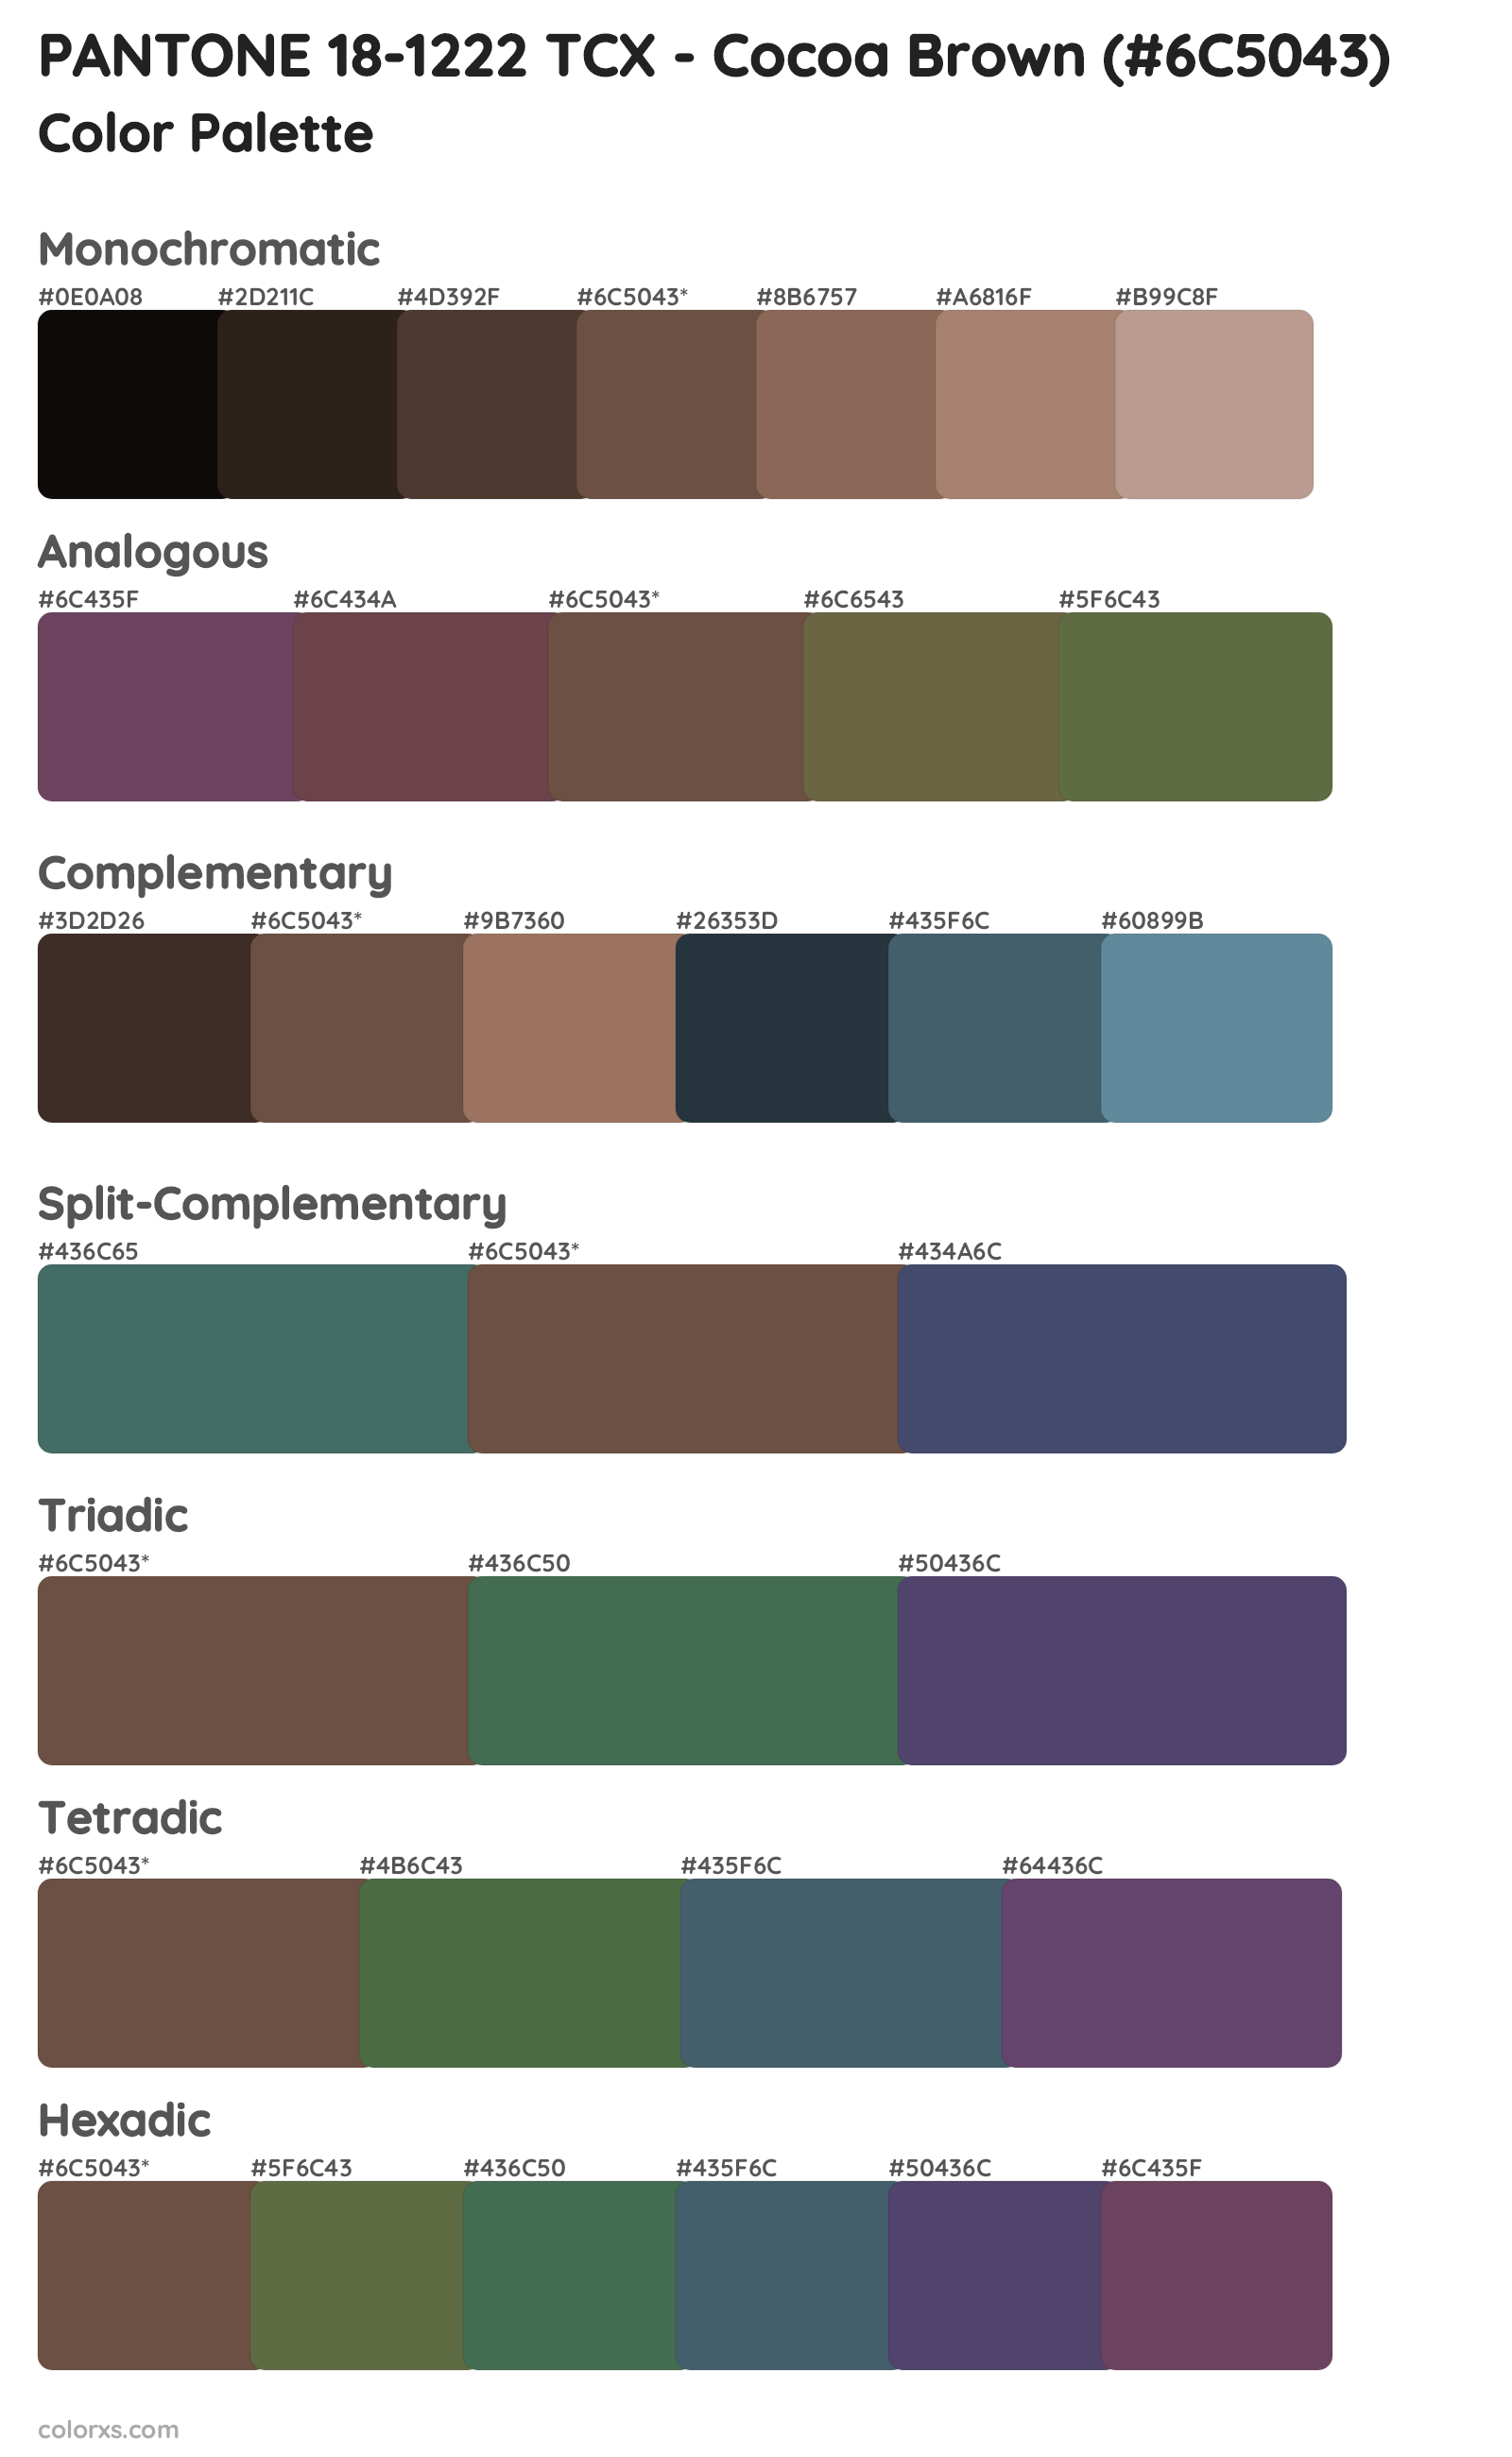 PANTONE 18-1222 TCX - Cocoa Brown Color Scheme Palettes